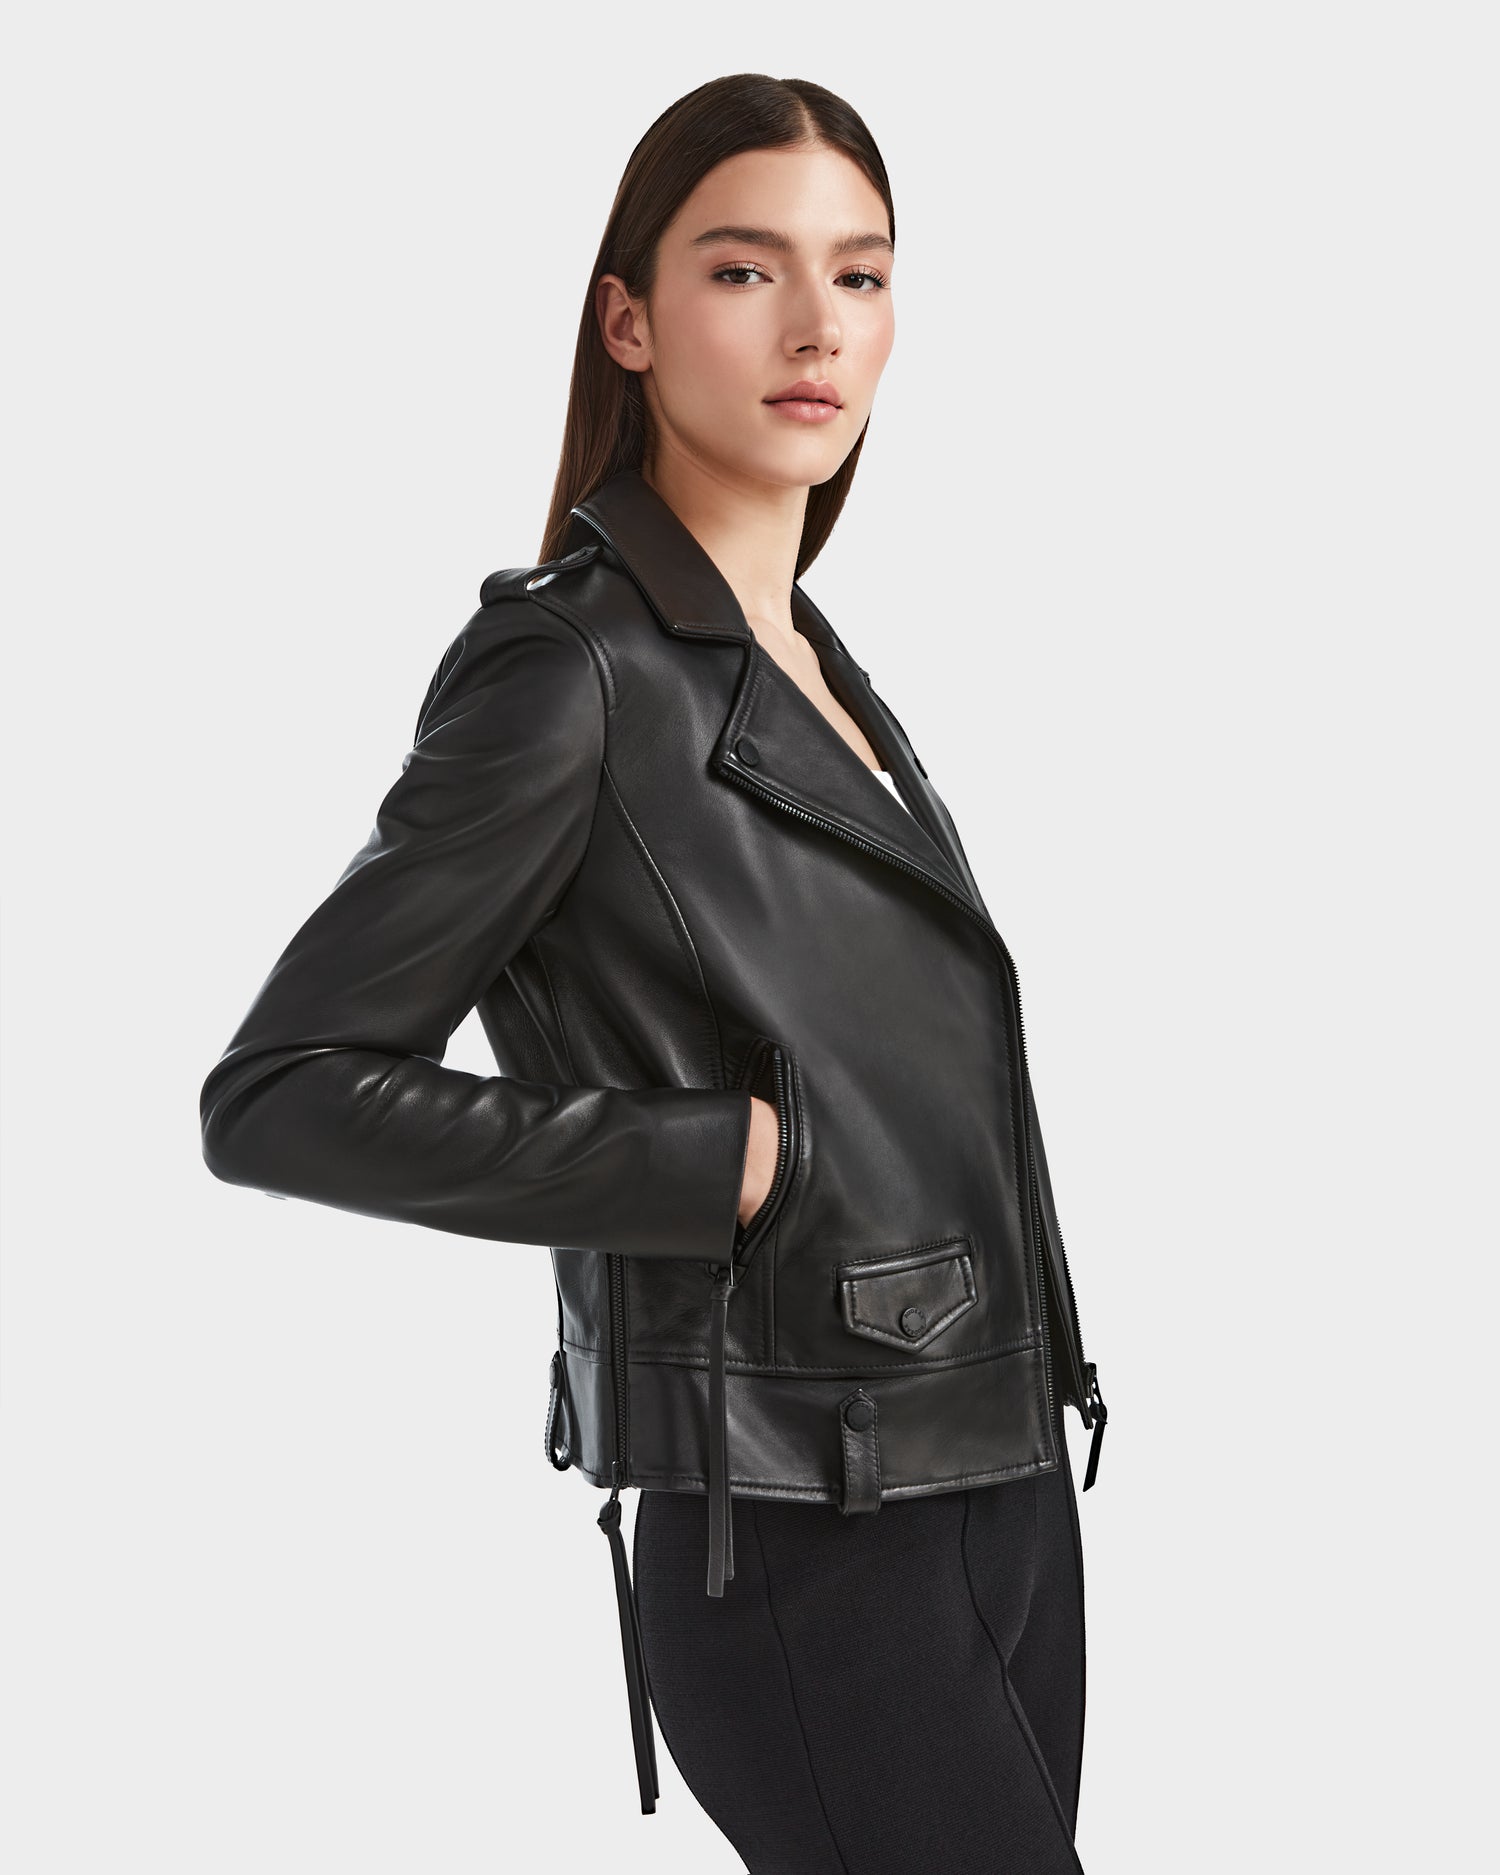 Women's leather jacket MERGO BLACK | RUDSAK – Rudsak